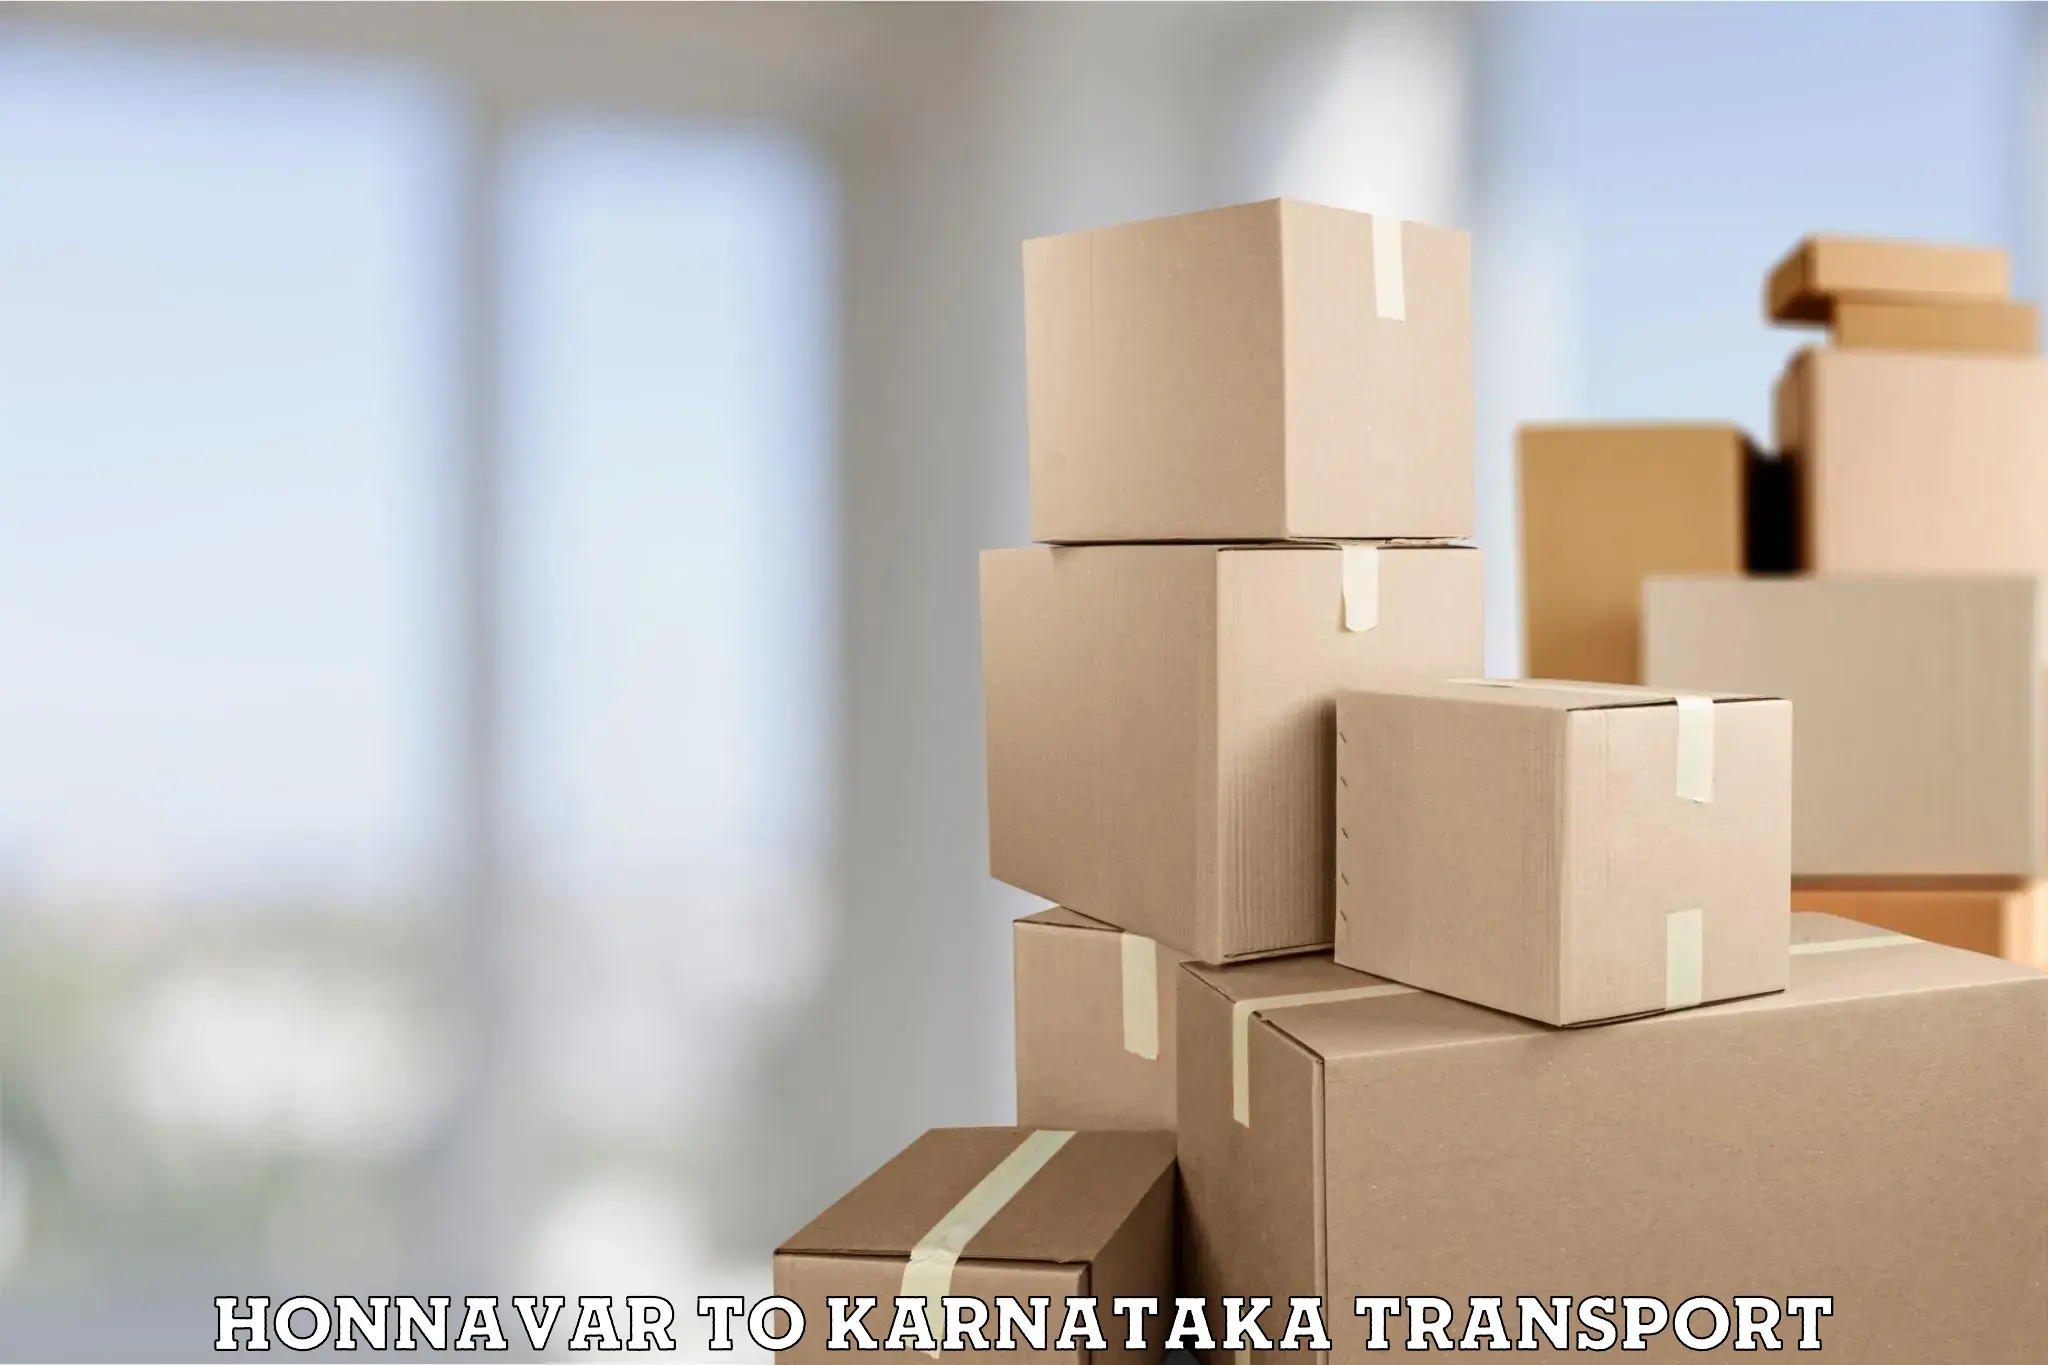 Daily transport service Honnavar to Karnataka